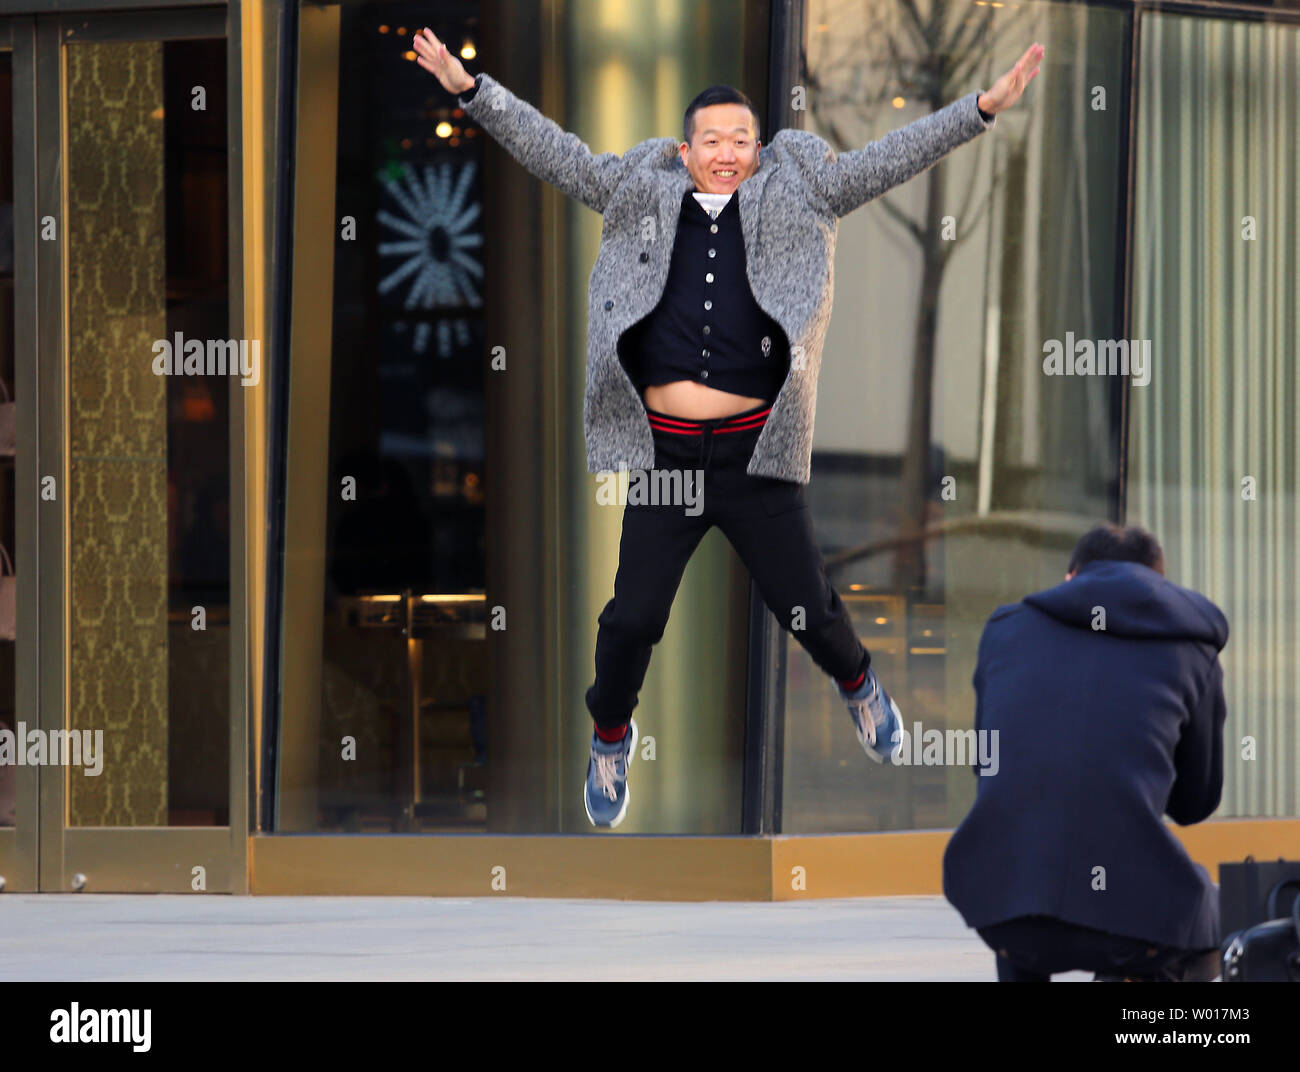 Ein chinesischer Mann springt in der Luft für ein Foto beim Einkaufen an einem upscale Fashion Mall in Peking am 23. März 2015. Für ein kommunistisches Land, es ist bemerkenswert, dass China hat eine Million Millionäre. China zählt jetzt nur nach den Vereinigten Staaten die Zahl der Superreichen hat es, trotz, dass Chinas durchschnittliche Einkommen ist das Gleiche wie in Peru. Foto von Stephen Rasierer/UPI Stockfoto